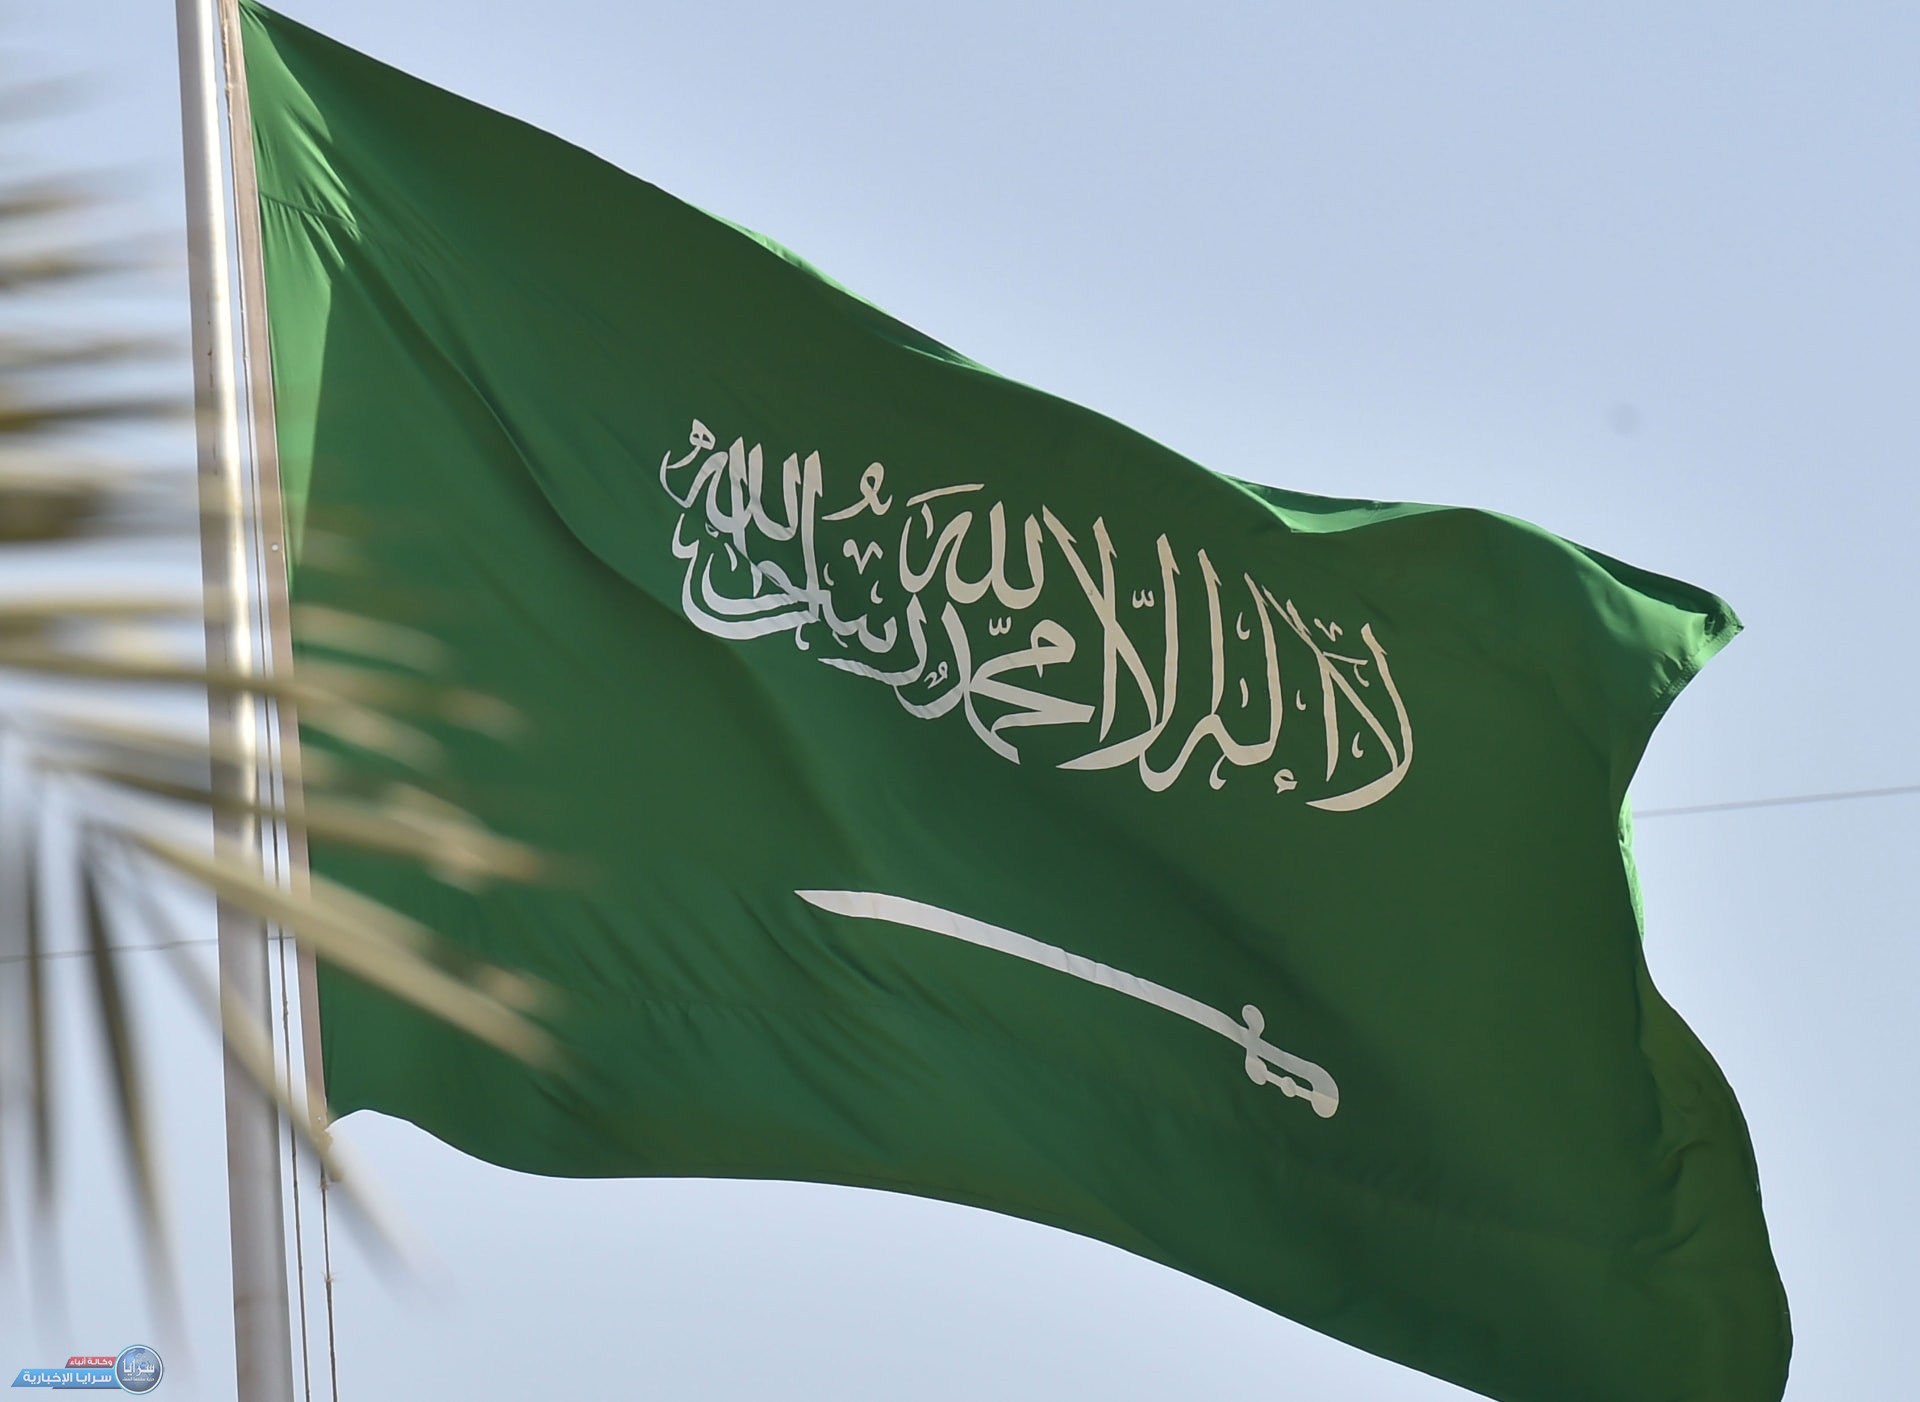 النيابة العامة السعودية تصدر بلاغا بشأن "تحقير وإسقاط" علم المملكة